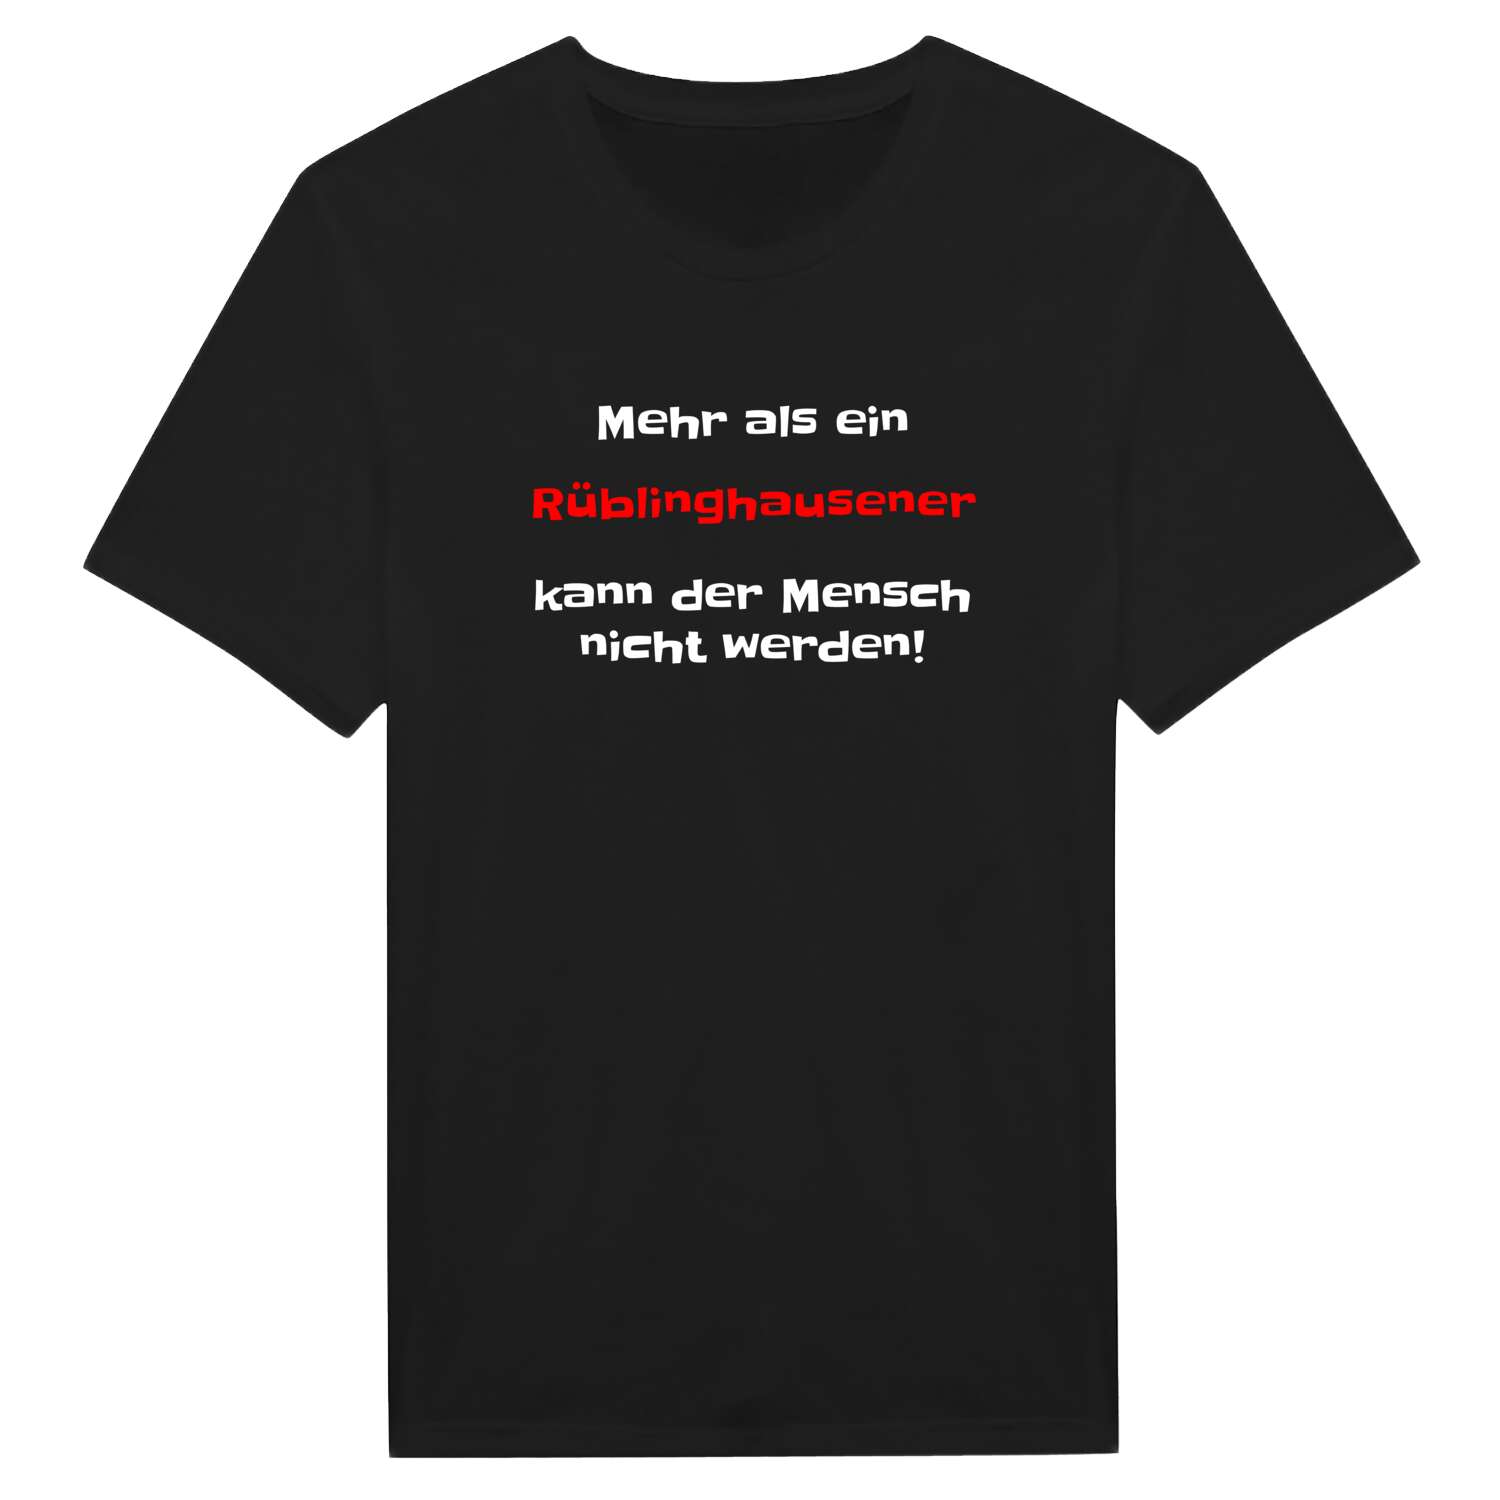 Rüblinghausen T-Shirt »Mehr als ein«